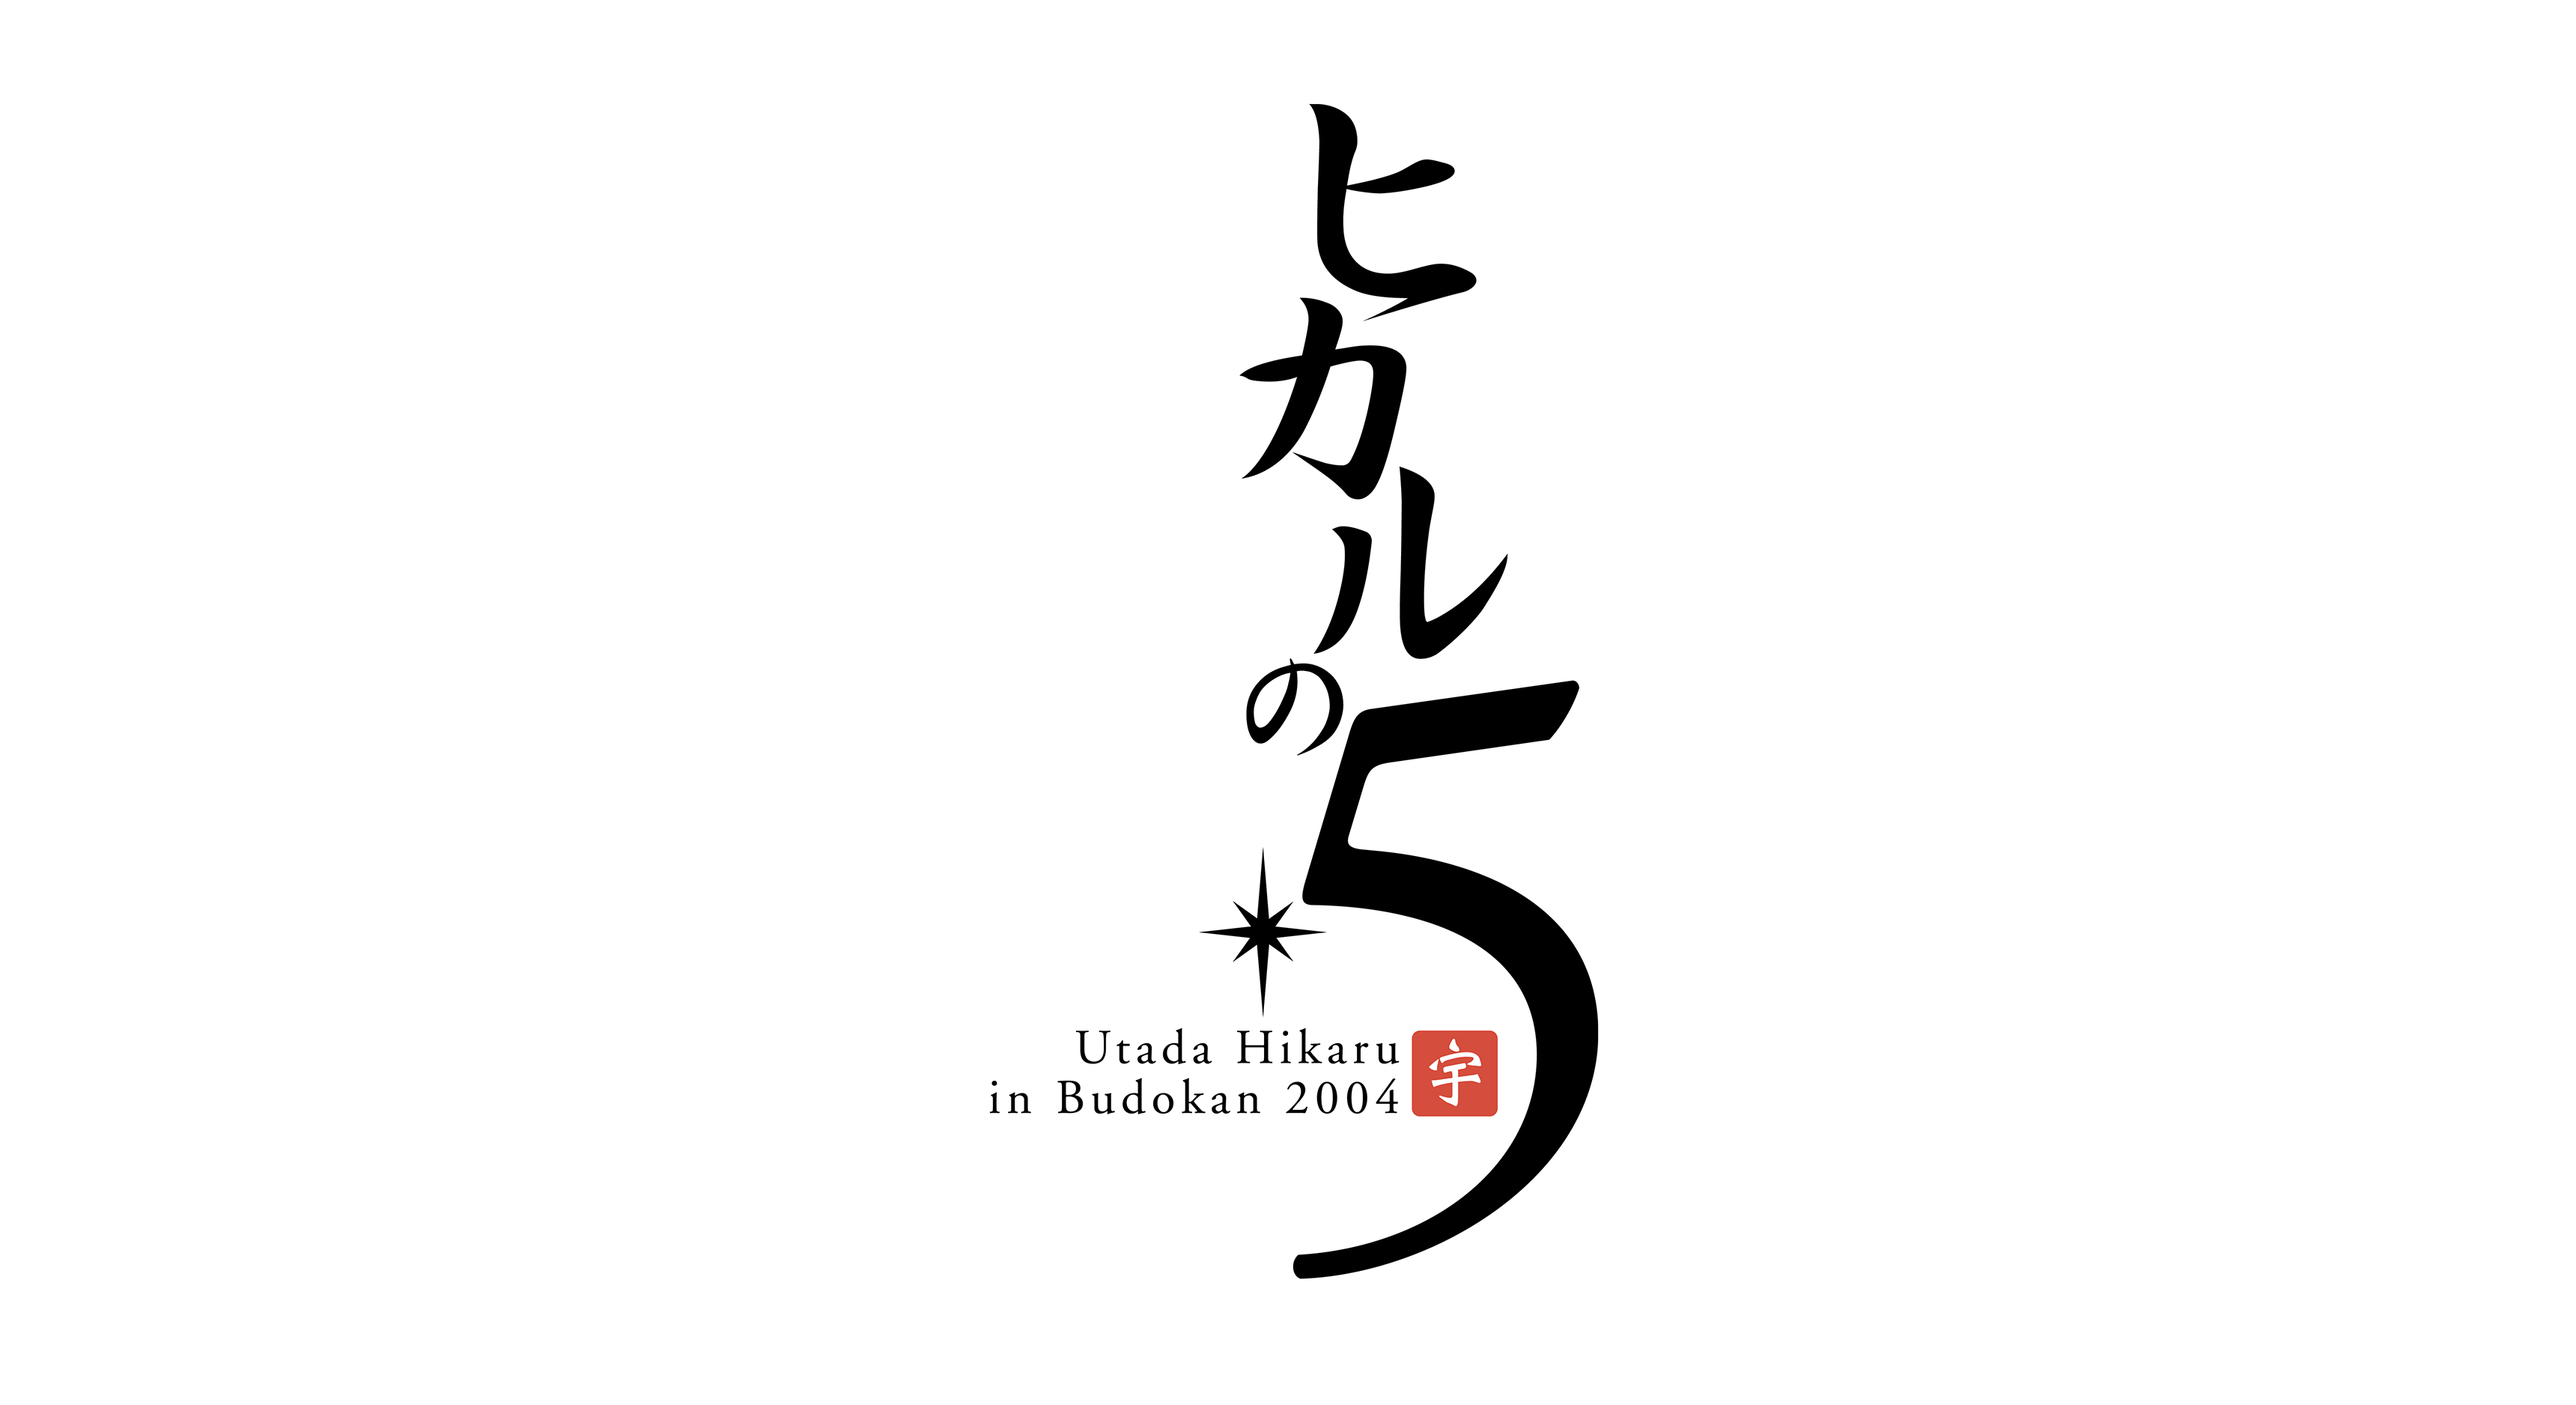 Utada Hikaru in Budokan 2004「ヒカルの5」